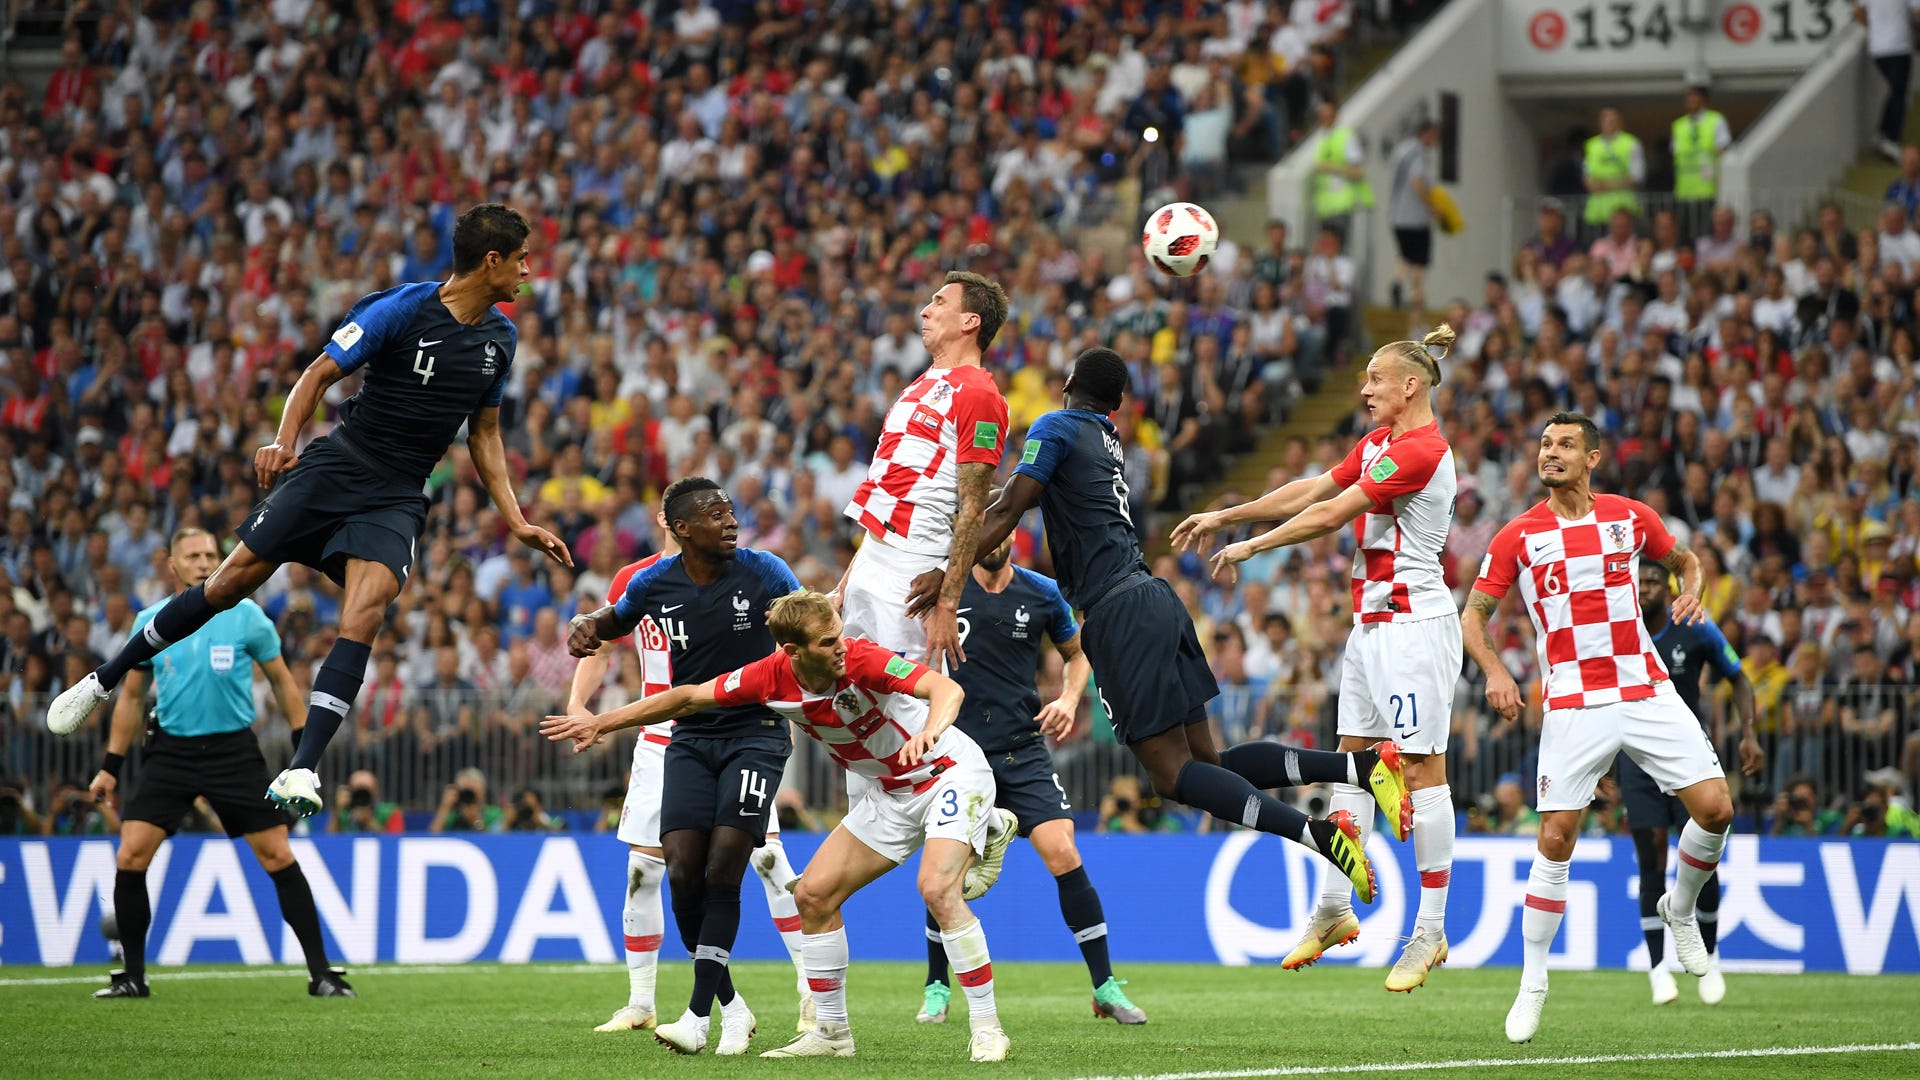 Frankreich gegen Kroatien heute live im TV und im LIVE-STREAM sehen Alles zur Übertragung der Nations League Goal Deutschland